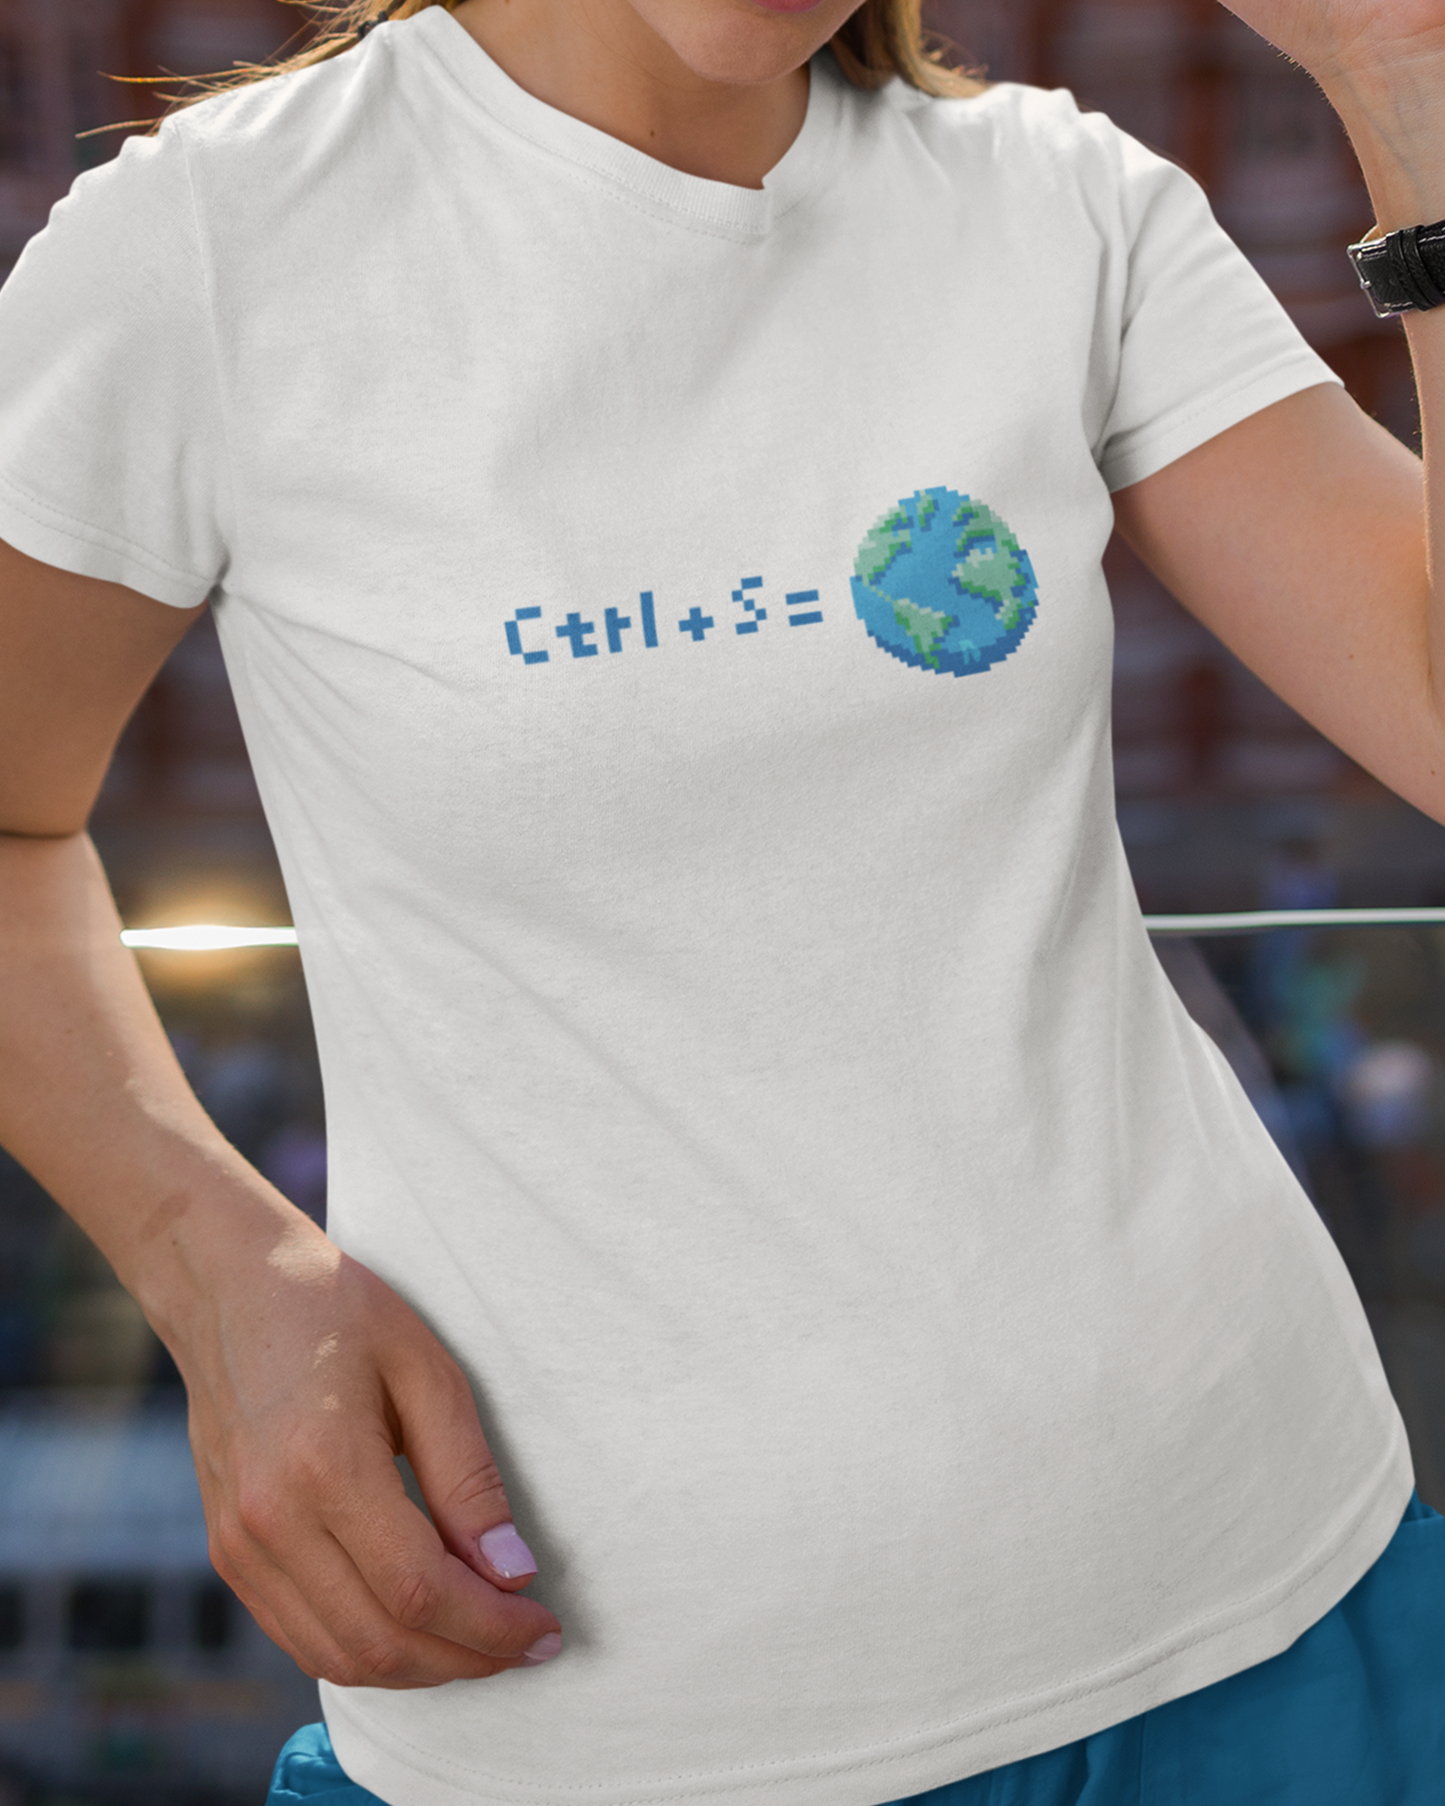 Ctrl+S=Earth Tshirt